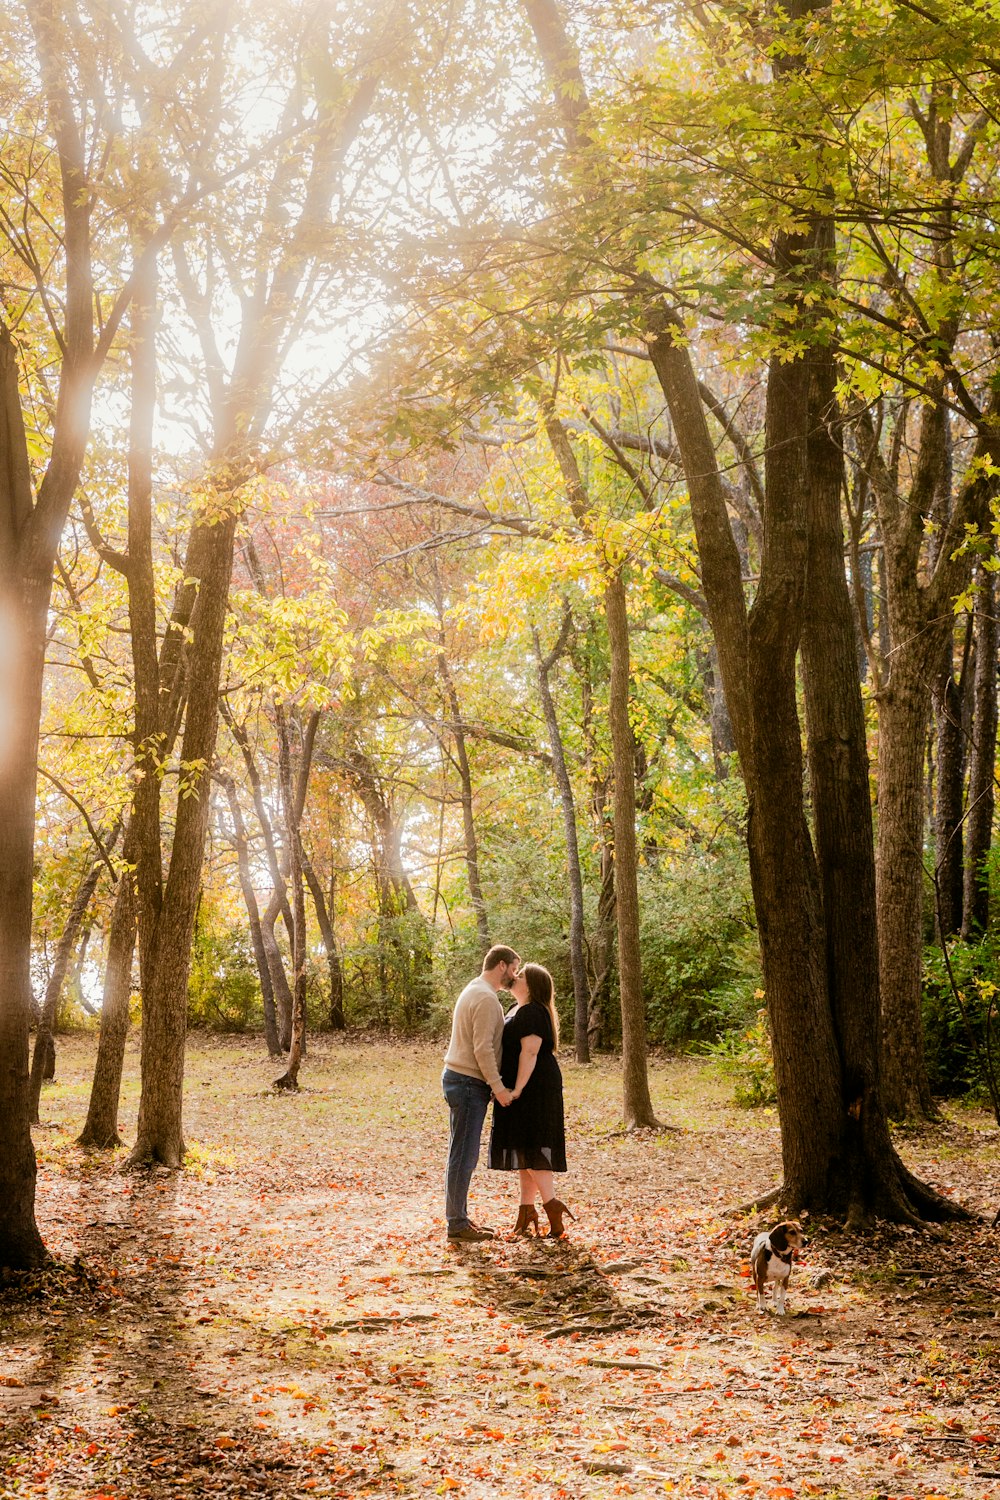 ein Paar küsst sich im Wald, umgeben von Bäumen